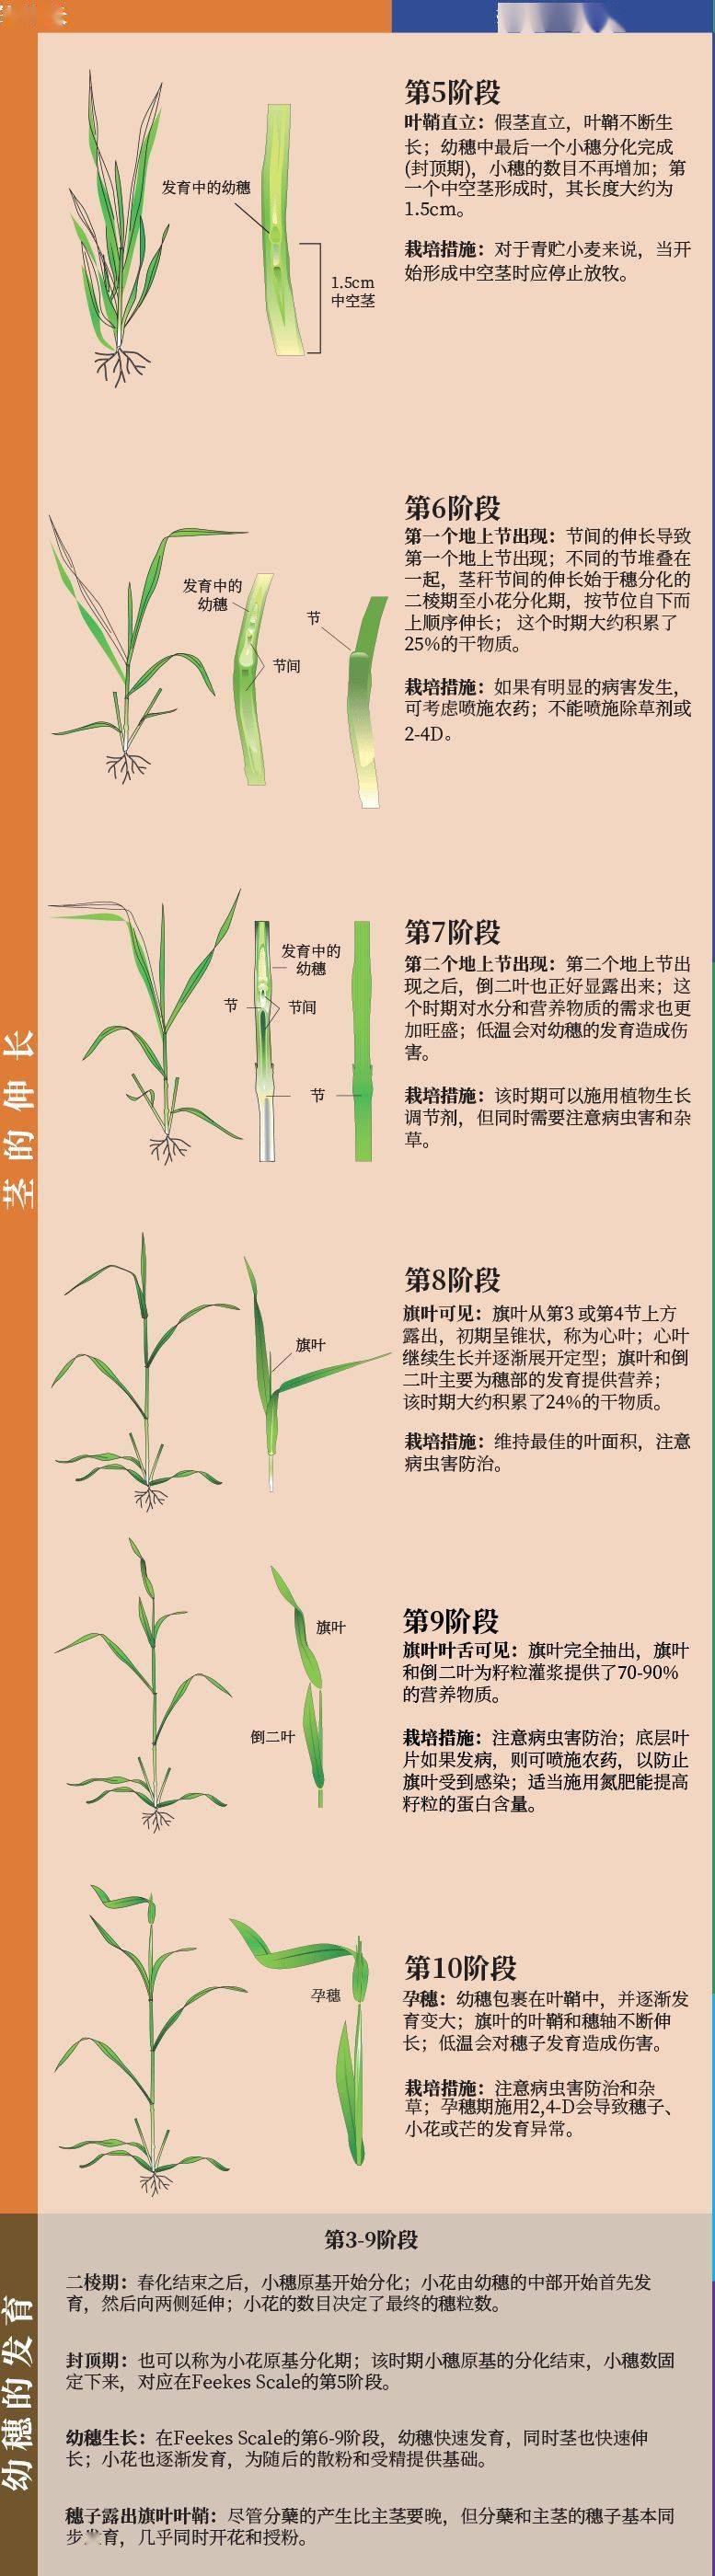 小麦的生长过程记录图片